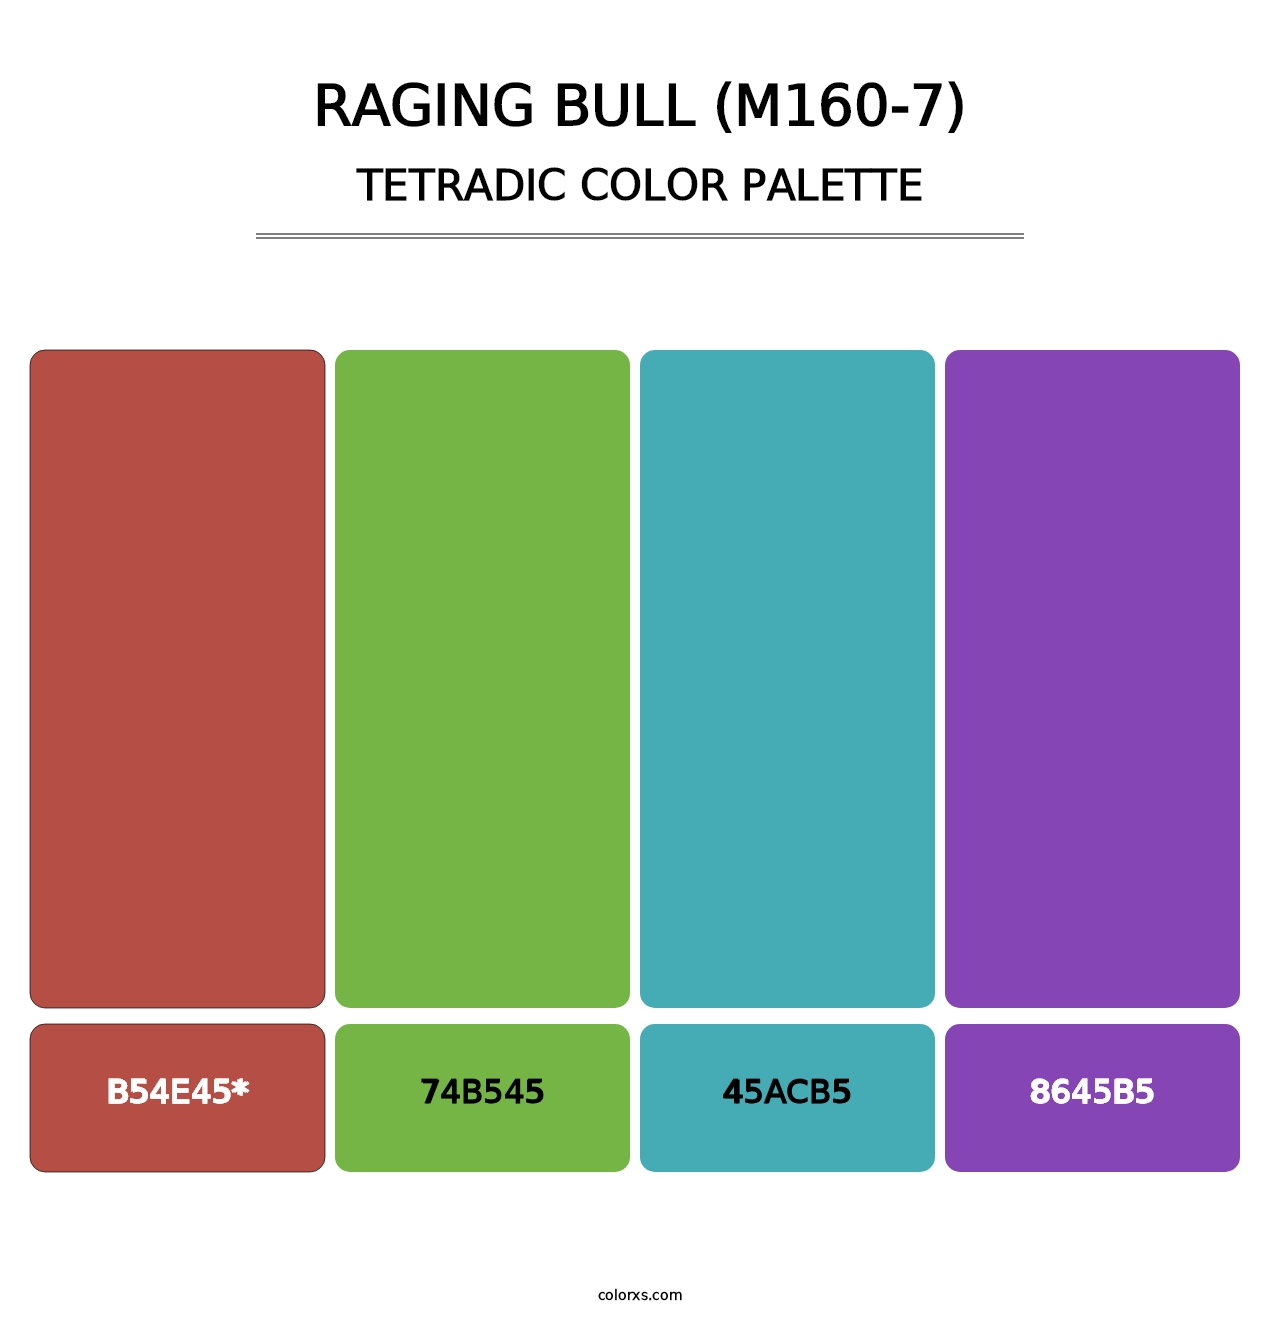 Raging Bull (M160-7) - Tetradic Color Palette